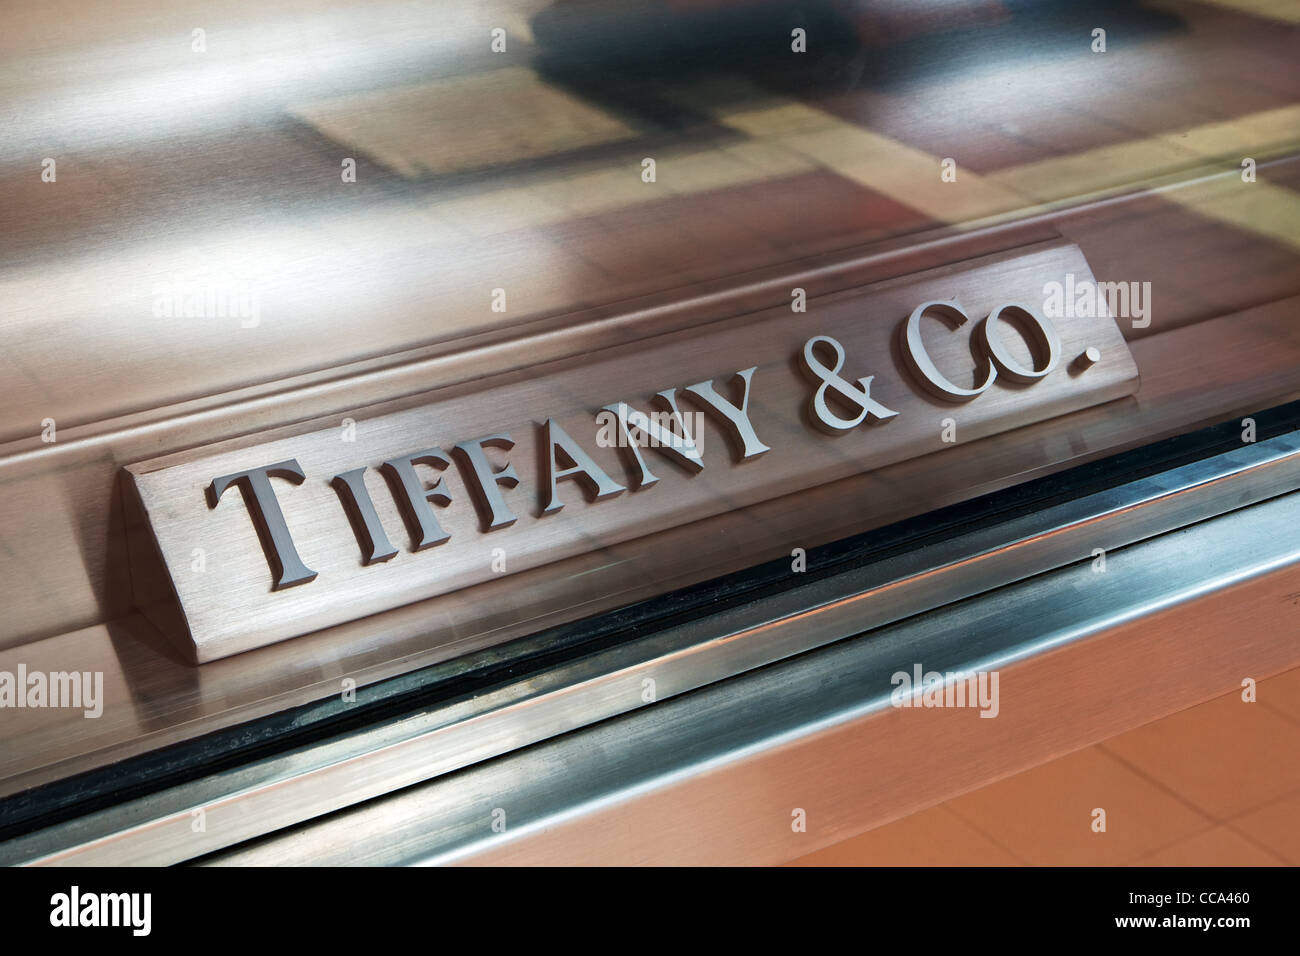 Tiffany & Co. segno nella finestra di una gioielleria Tiffany store Foto Stock